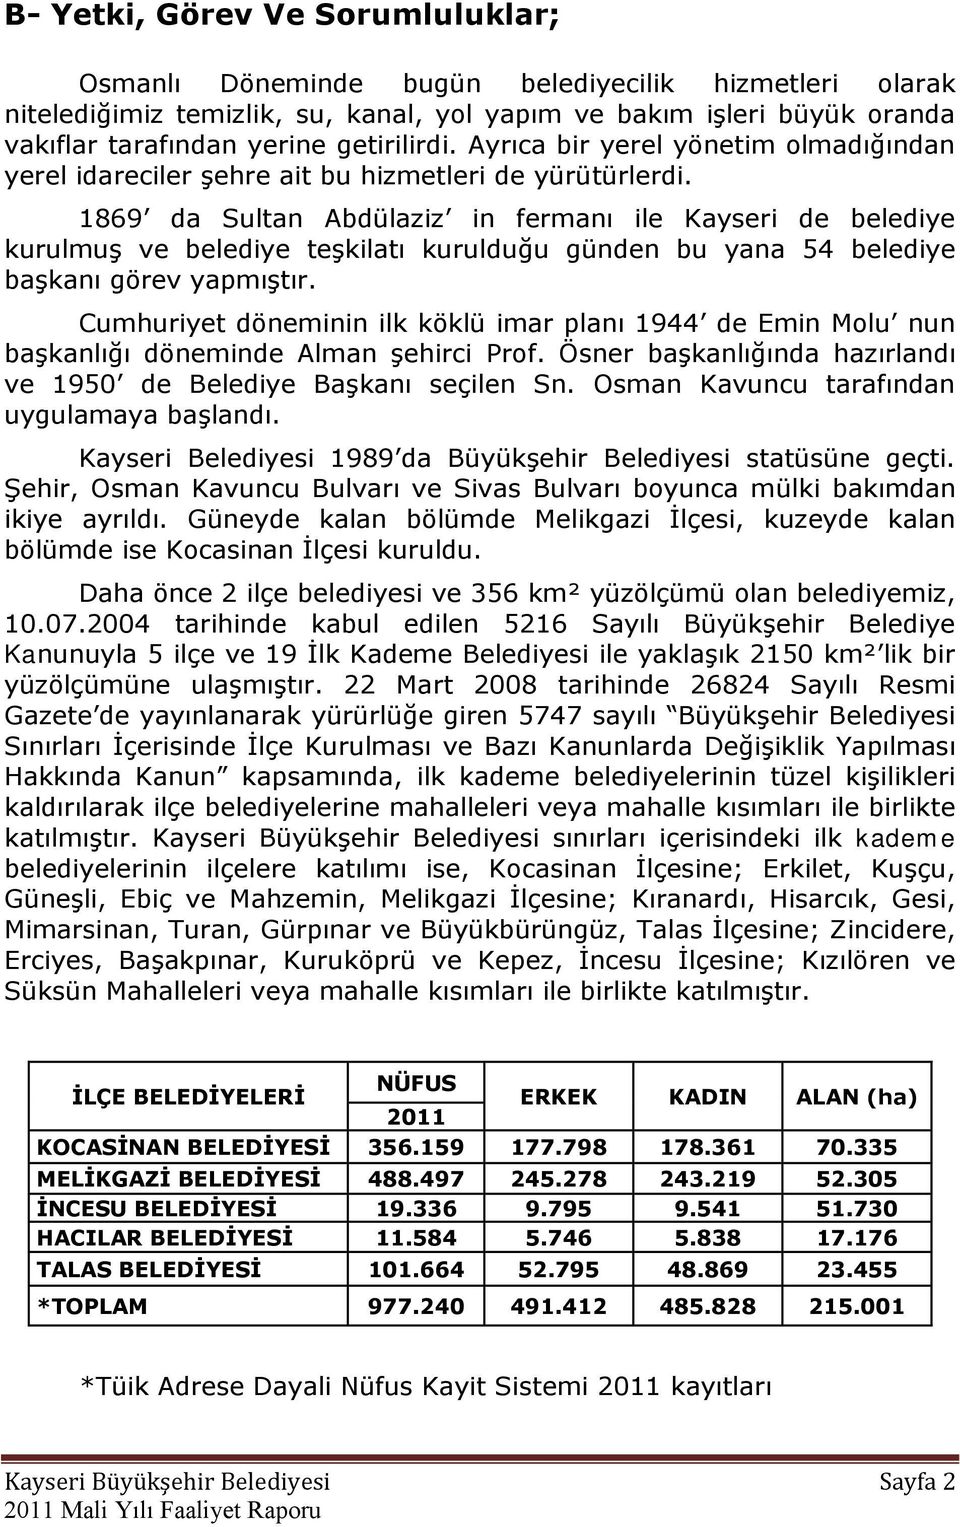 1869 da Sultan Abdülaziz in fermanı ile Kayseri de belediye kurulmuģ ve belediye teģkilatı kurulduğu günden bu yana 54 belediye baģkanı görev yapmıģtır.